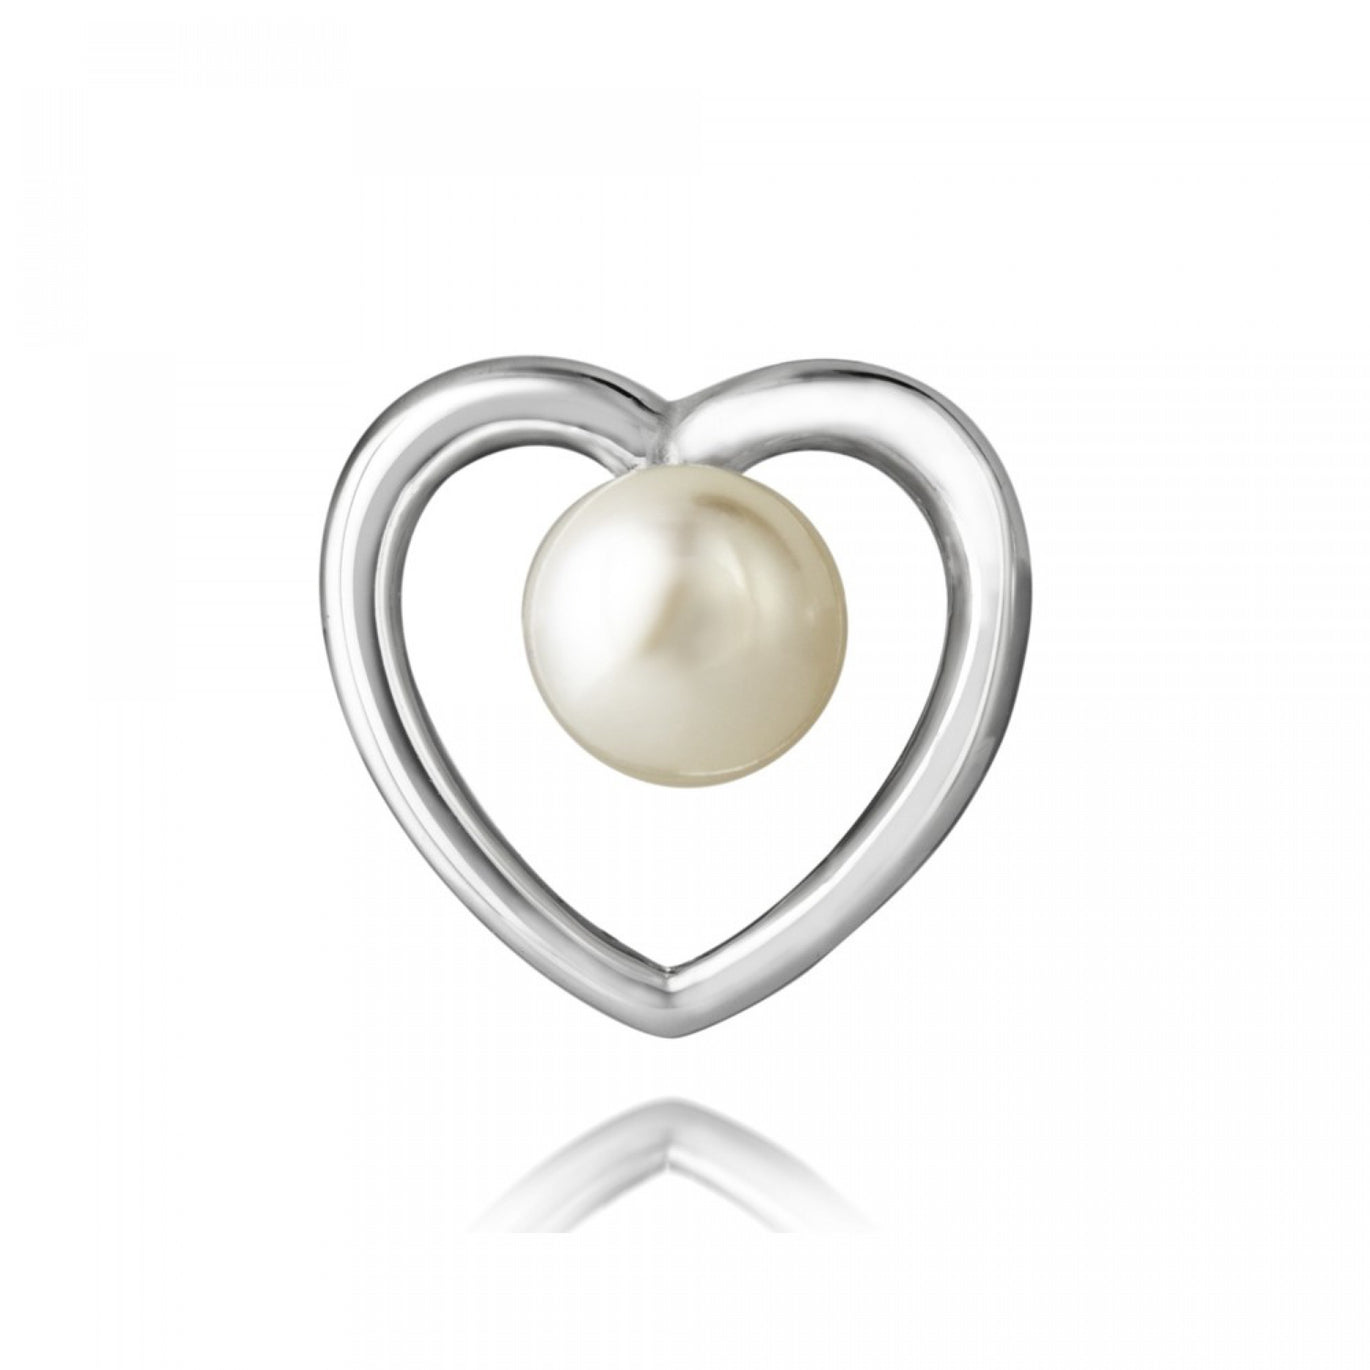 Jersey Pearl Kimberley Heart Pearl Stud Earrings